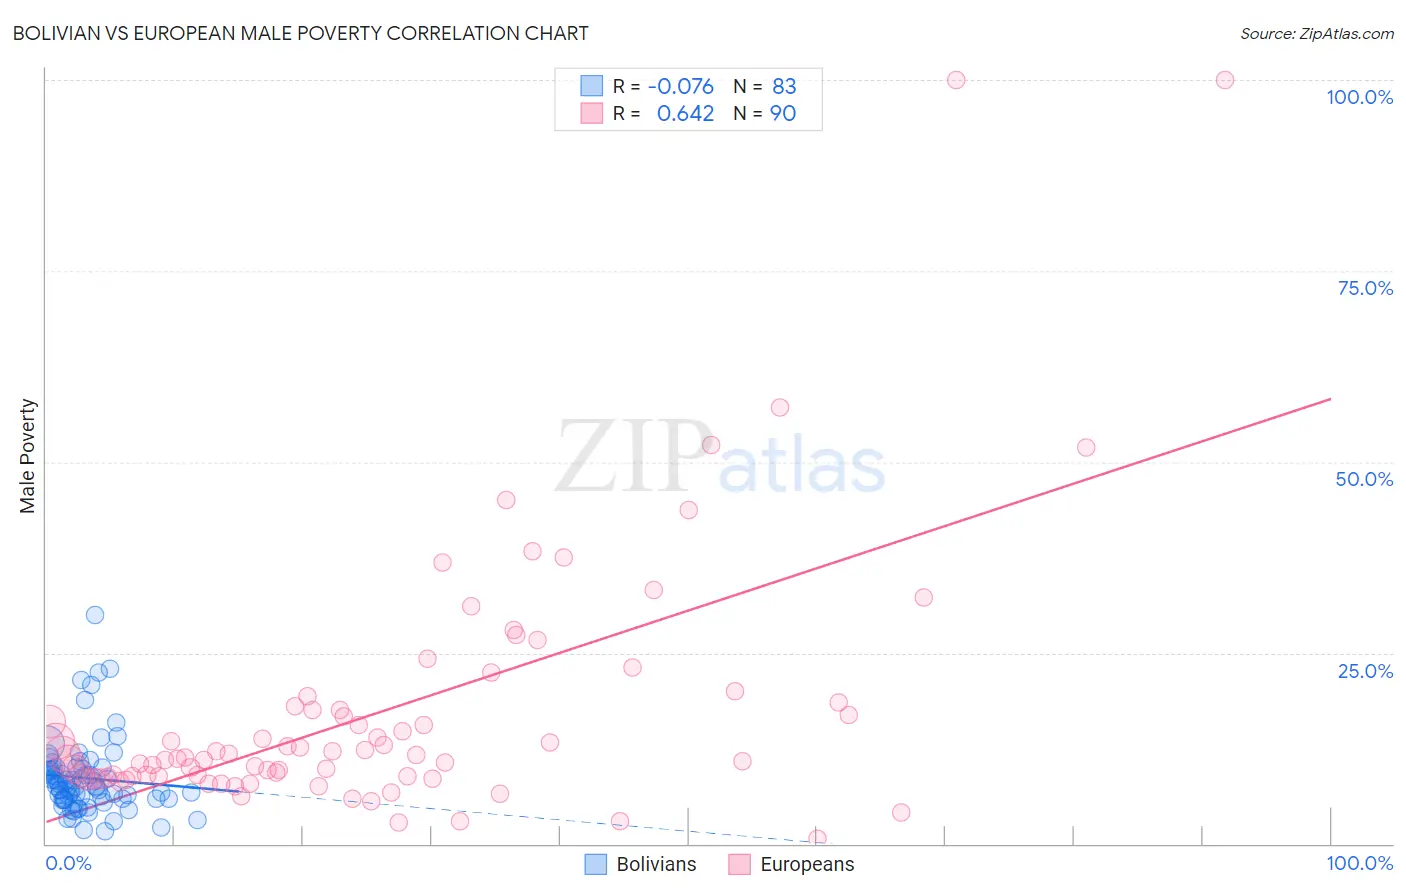 Bolivian vs European Male Poverty